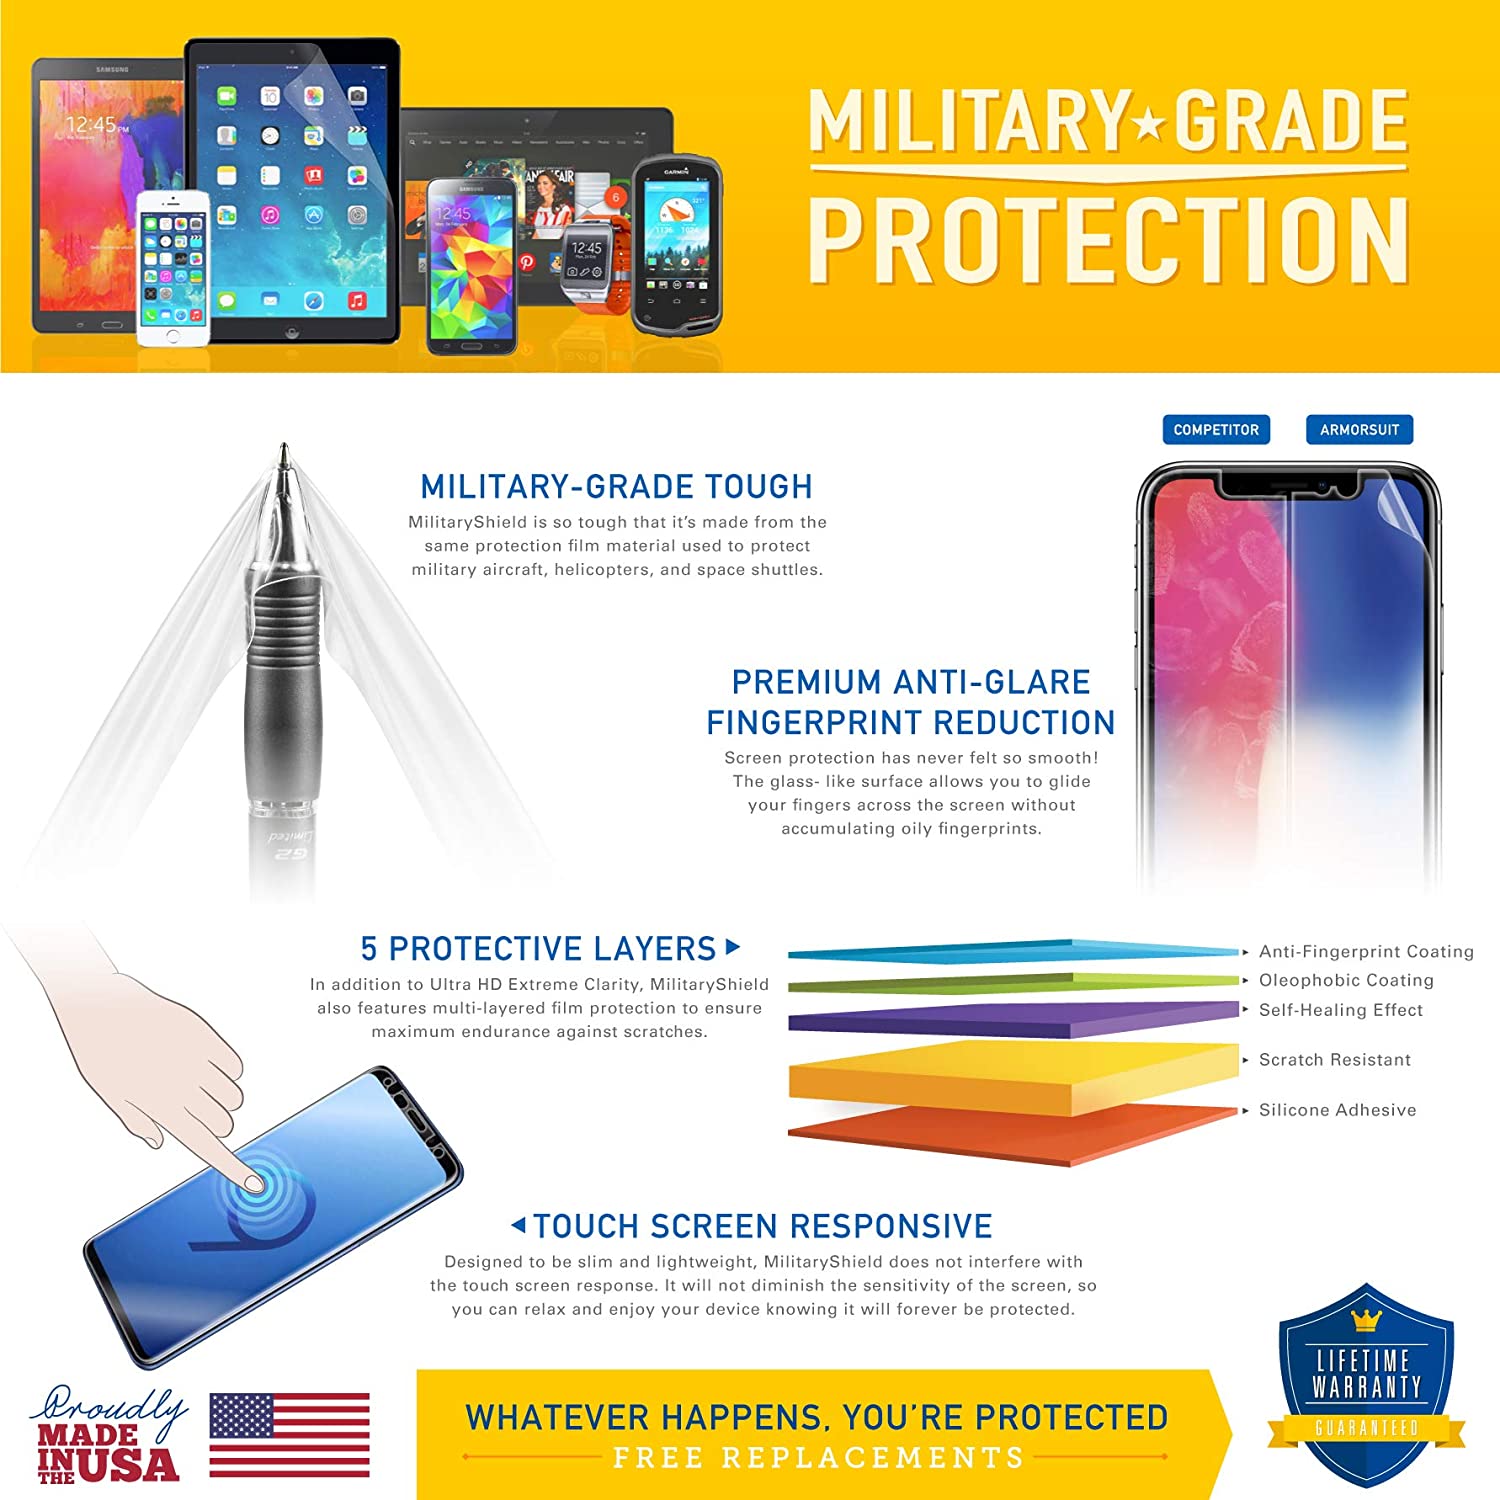 [2 Pack] LG K8 V (VS500) Screen Protector